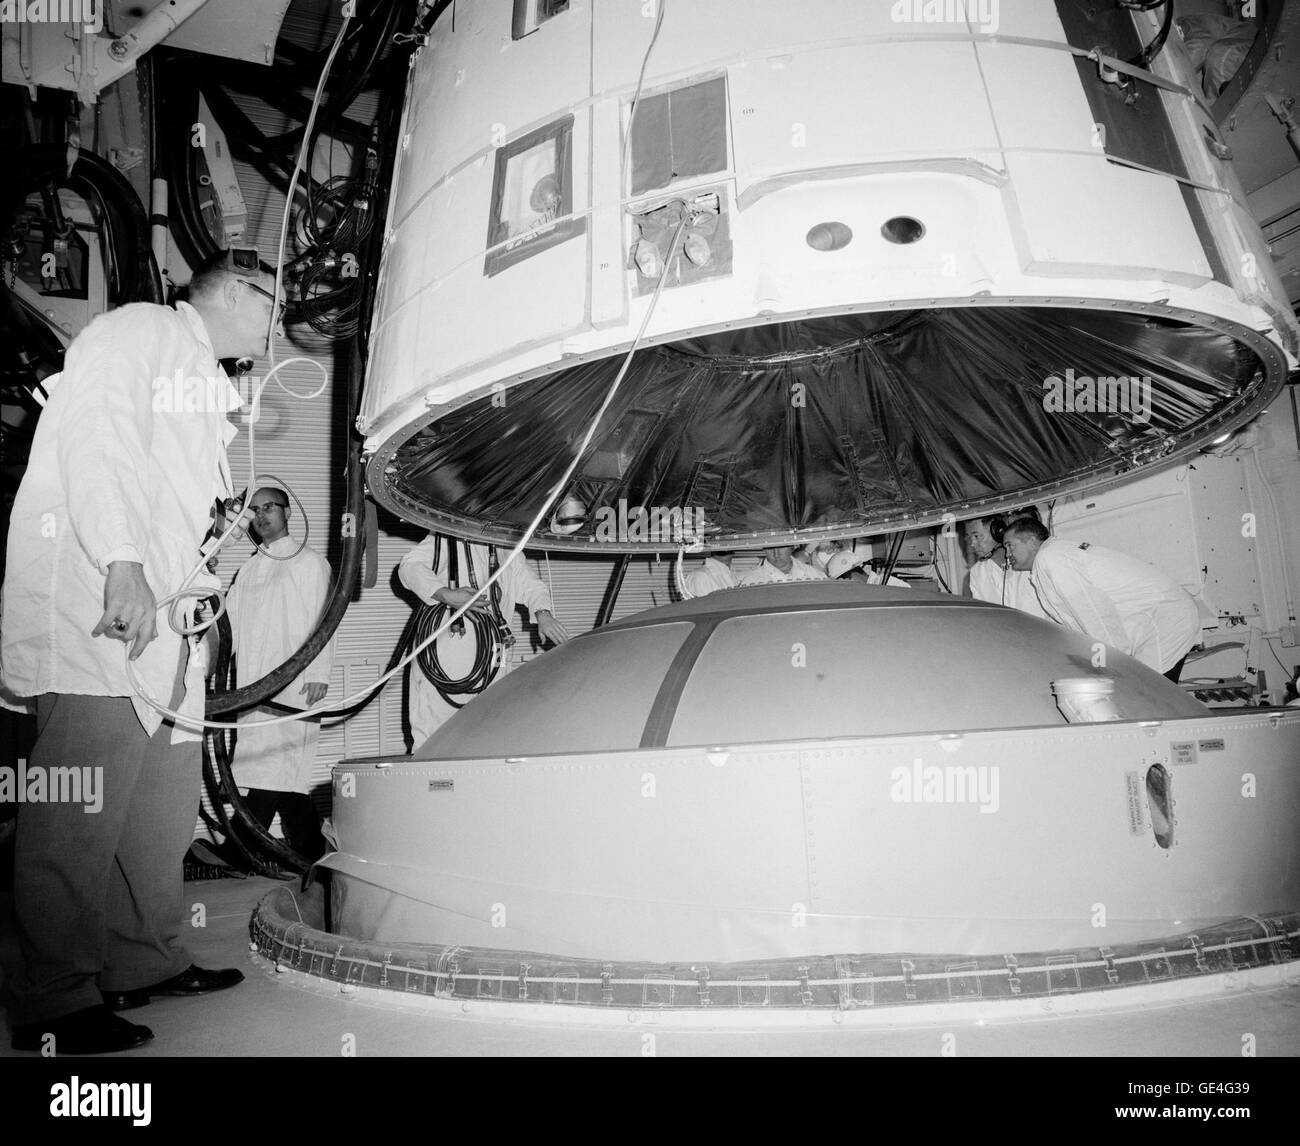 Il Gemini III veicolo spaziale è accoppiato con il Titan II veicolo di lancio nella sala bianca del pad 19 presso il Kennedy Space Center. Virgil I. (GUS) Grissom e John Young rode la capsula nello spazio il 23 marzo 1965 per una missione della durata di quasi cinque ore. La coppia di astronauti testati fuori il veicolo spaziale sul primo presidiati Gemini volo. Immagine # : S65-17337 Data: Febbraio 1965 Foto Stock